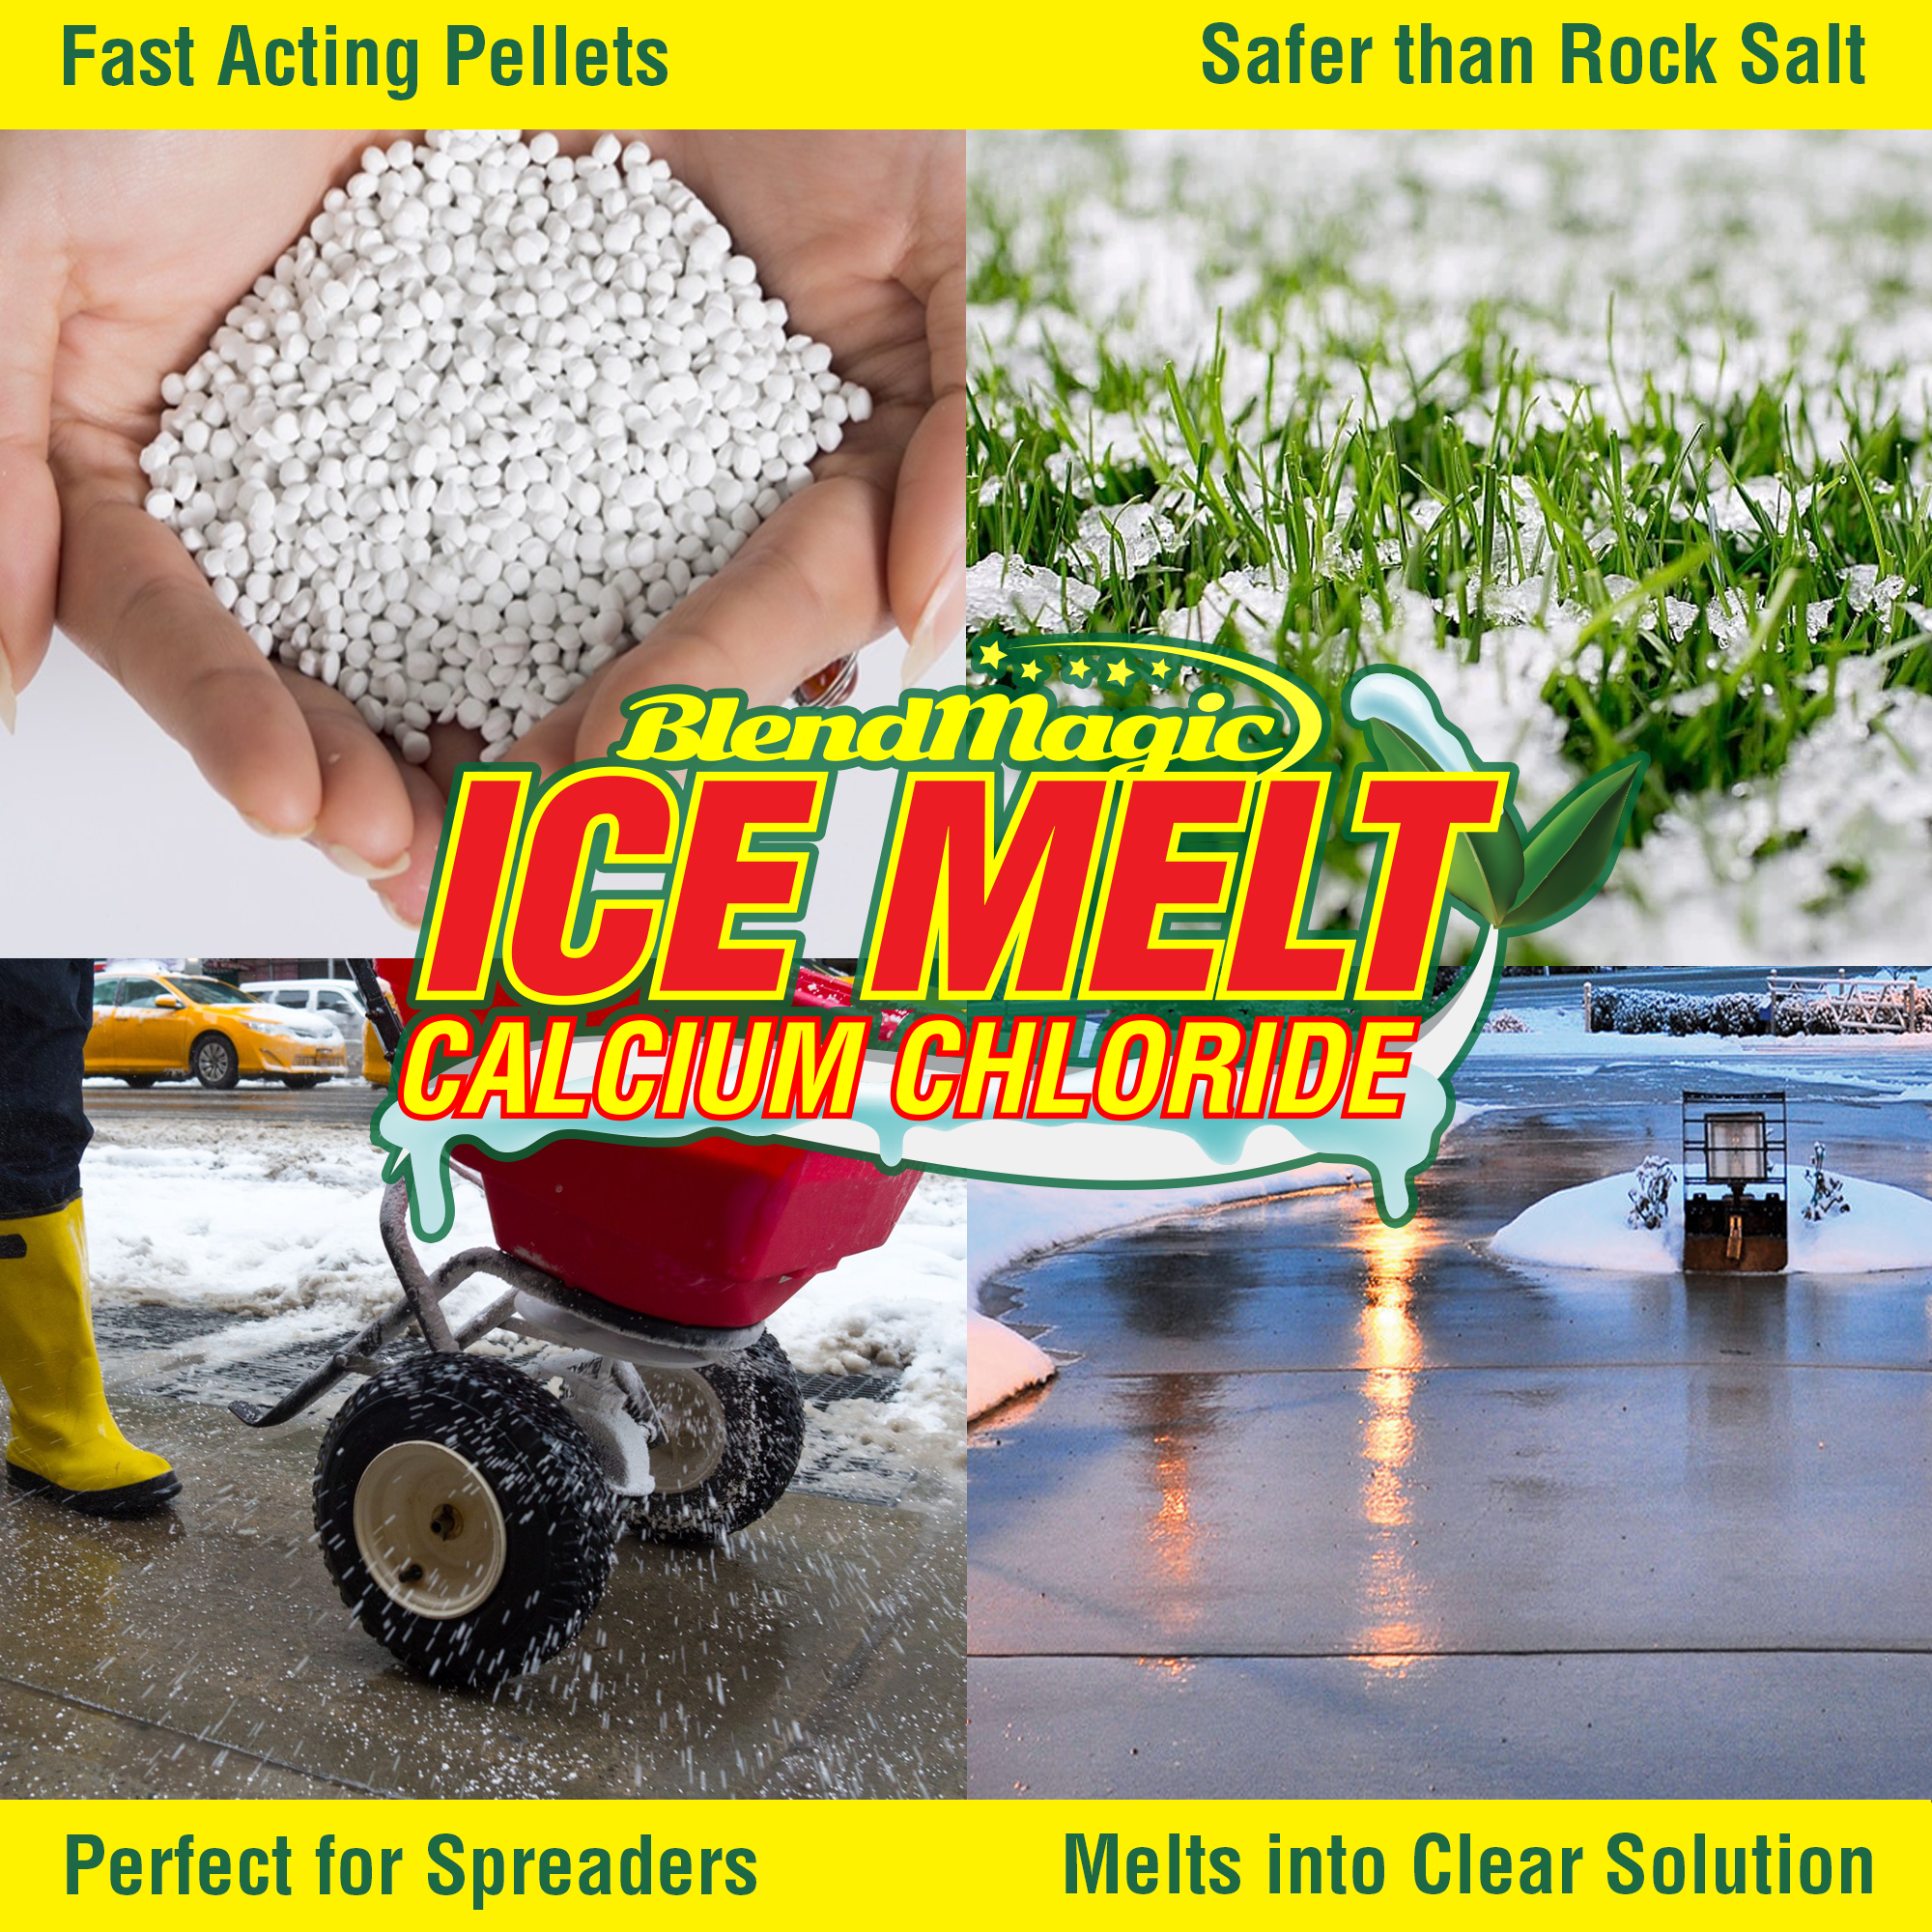 Ice Melting Salt 40 lb Pail